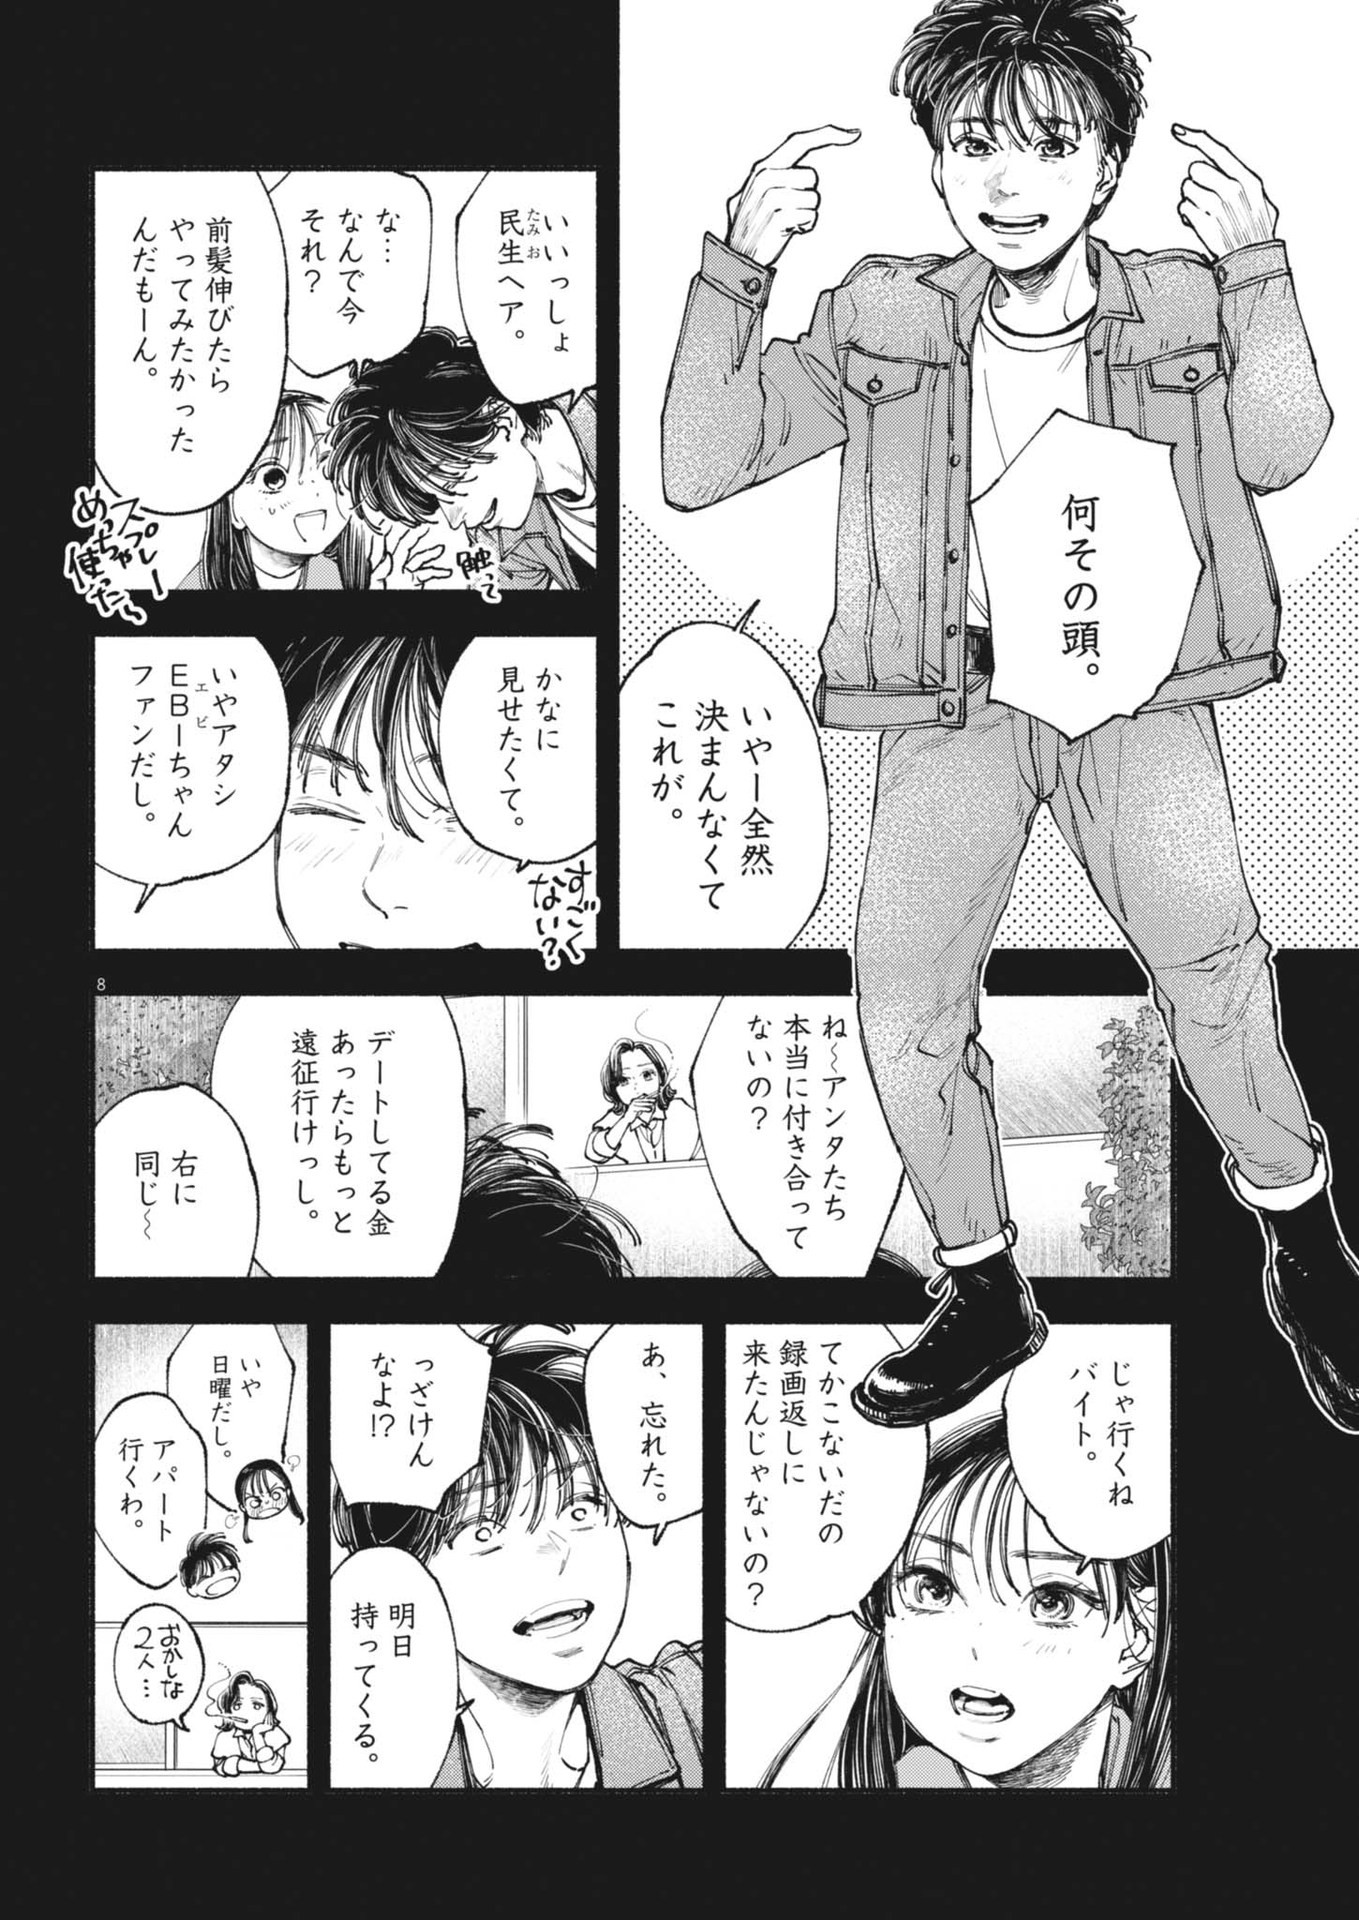 Konoyo wa Tatakau Kachi ga Aru  - Chapter 26 - Page 8